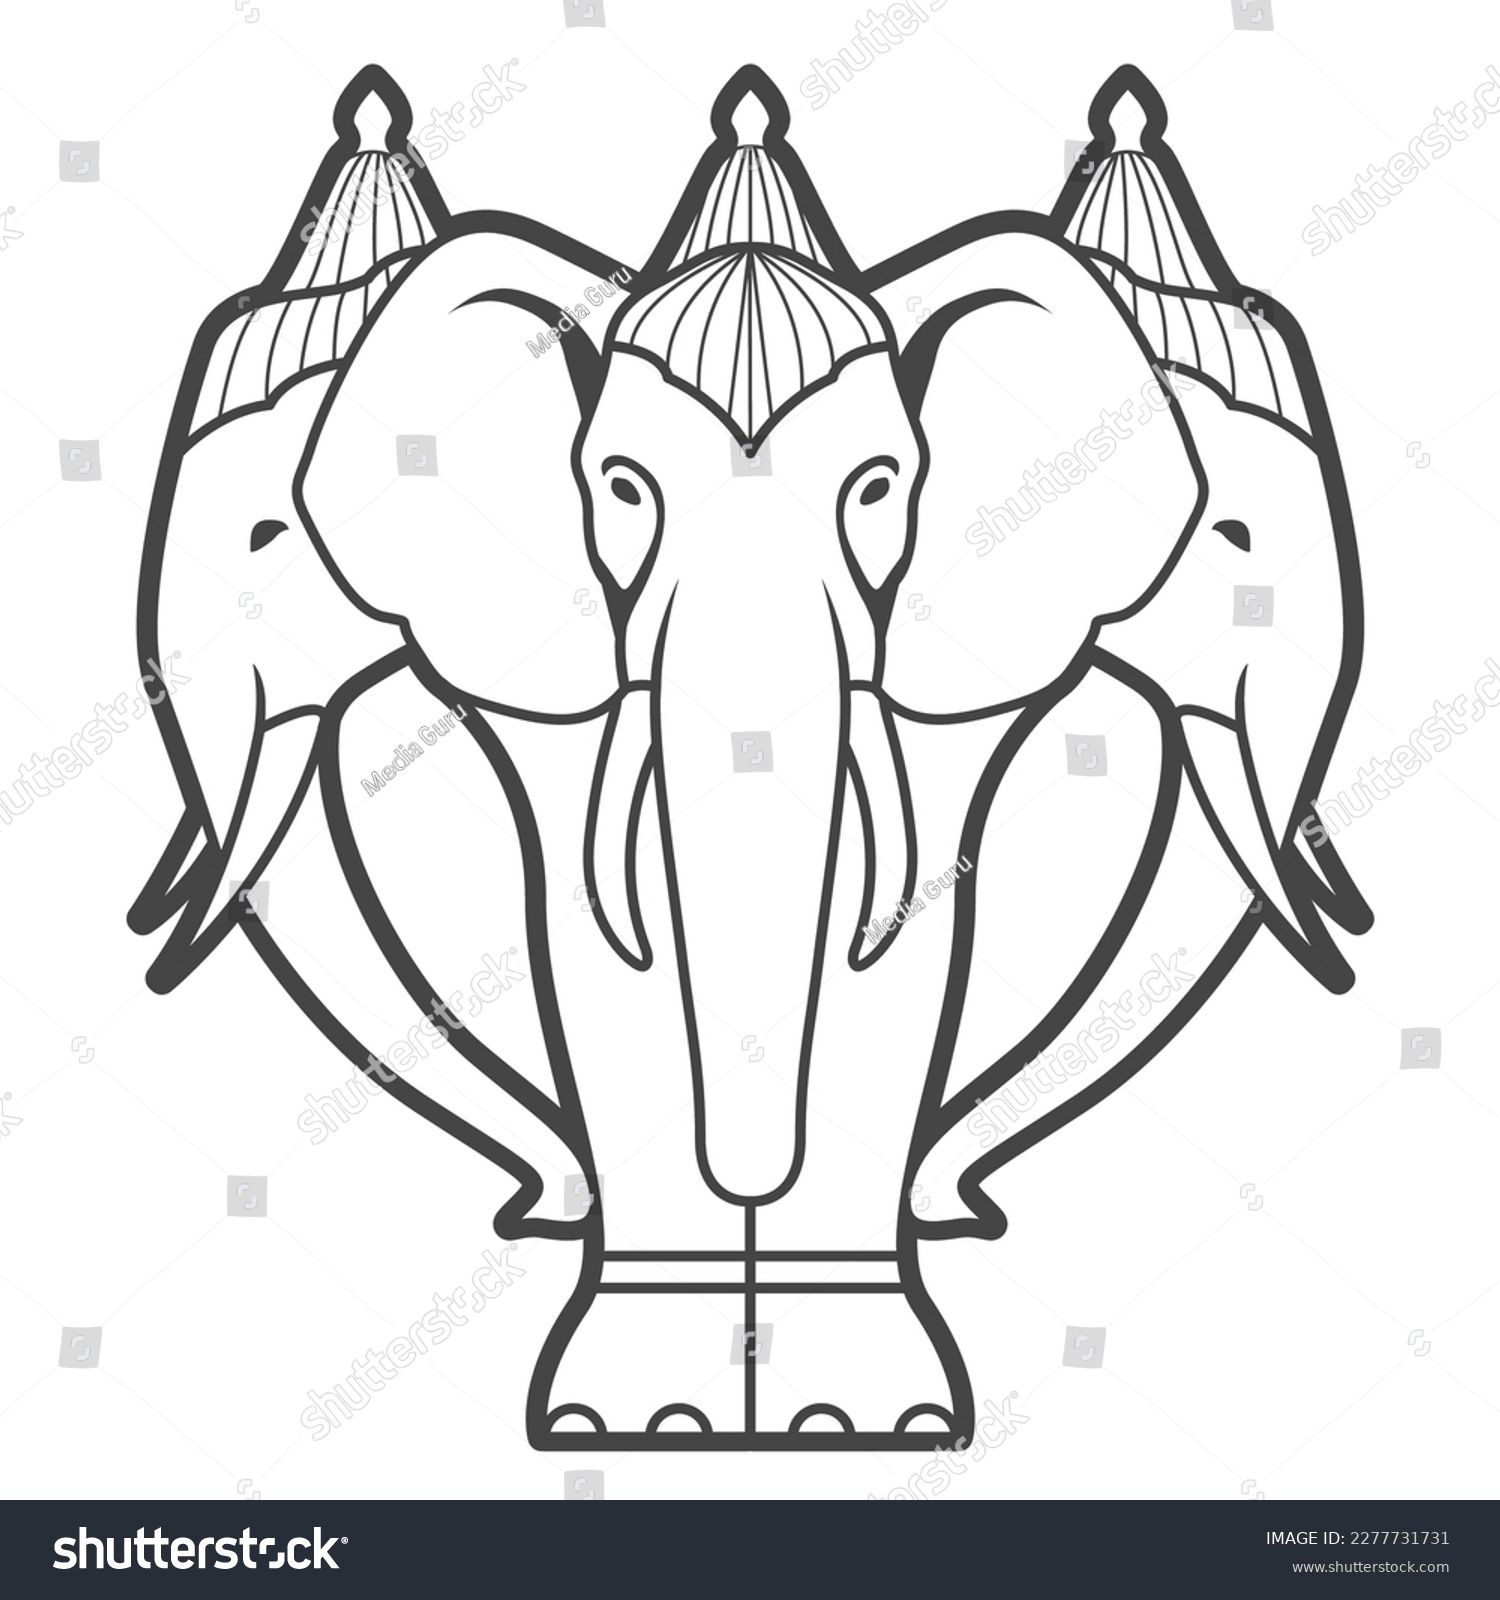 SVG of White elephant Airavata with many heads in hindu mythology, abhra-matanga or naga-malla elephant, vector svg